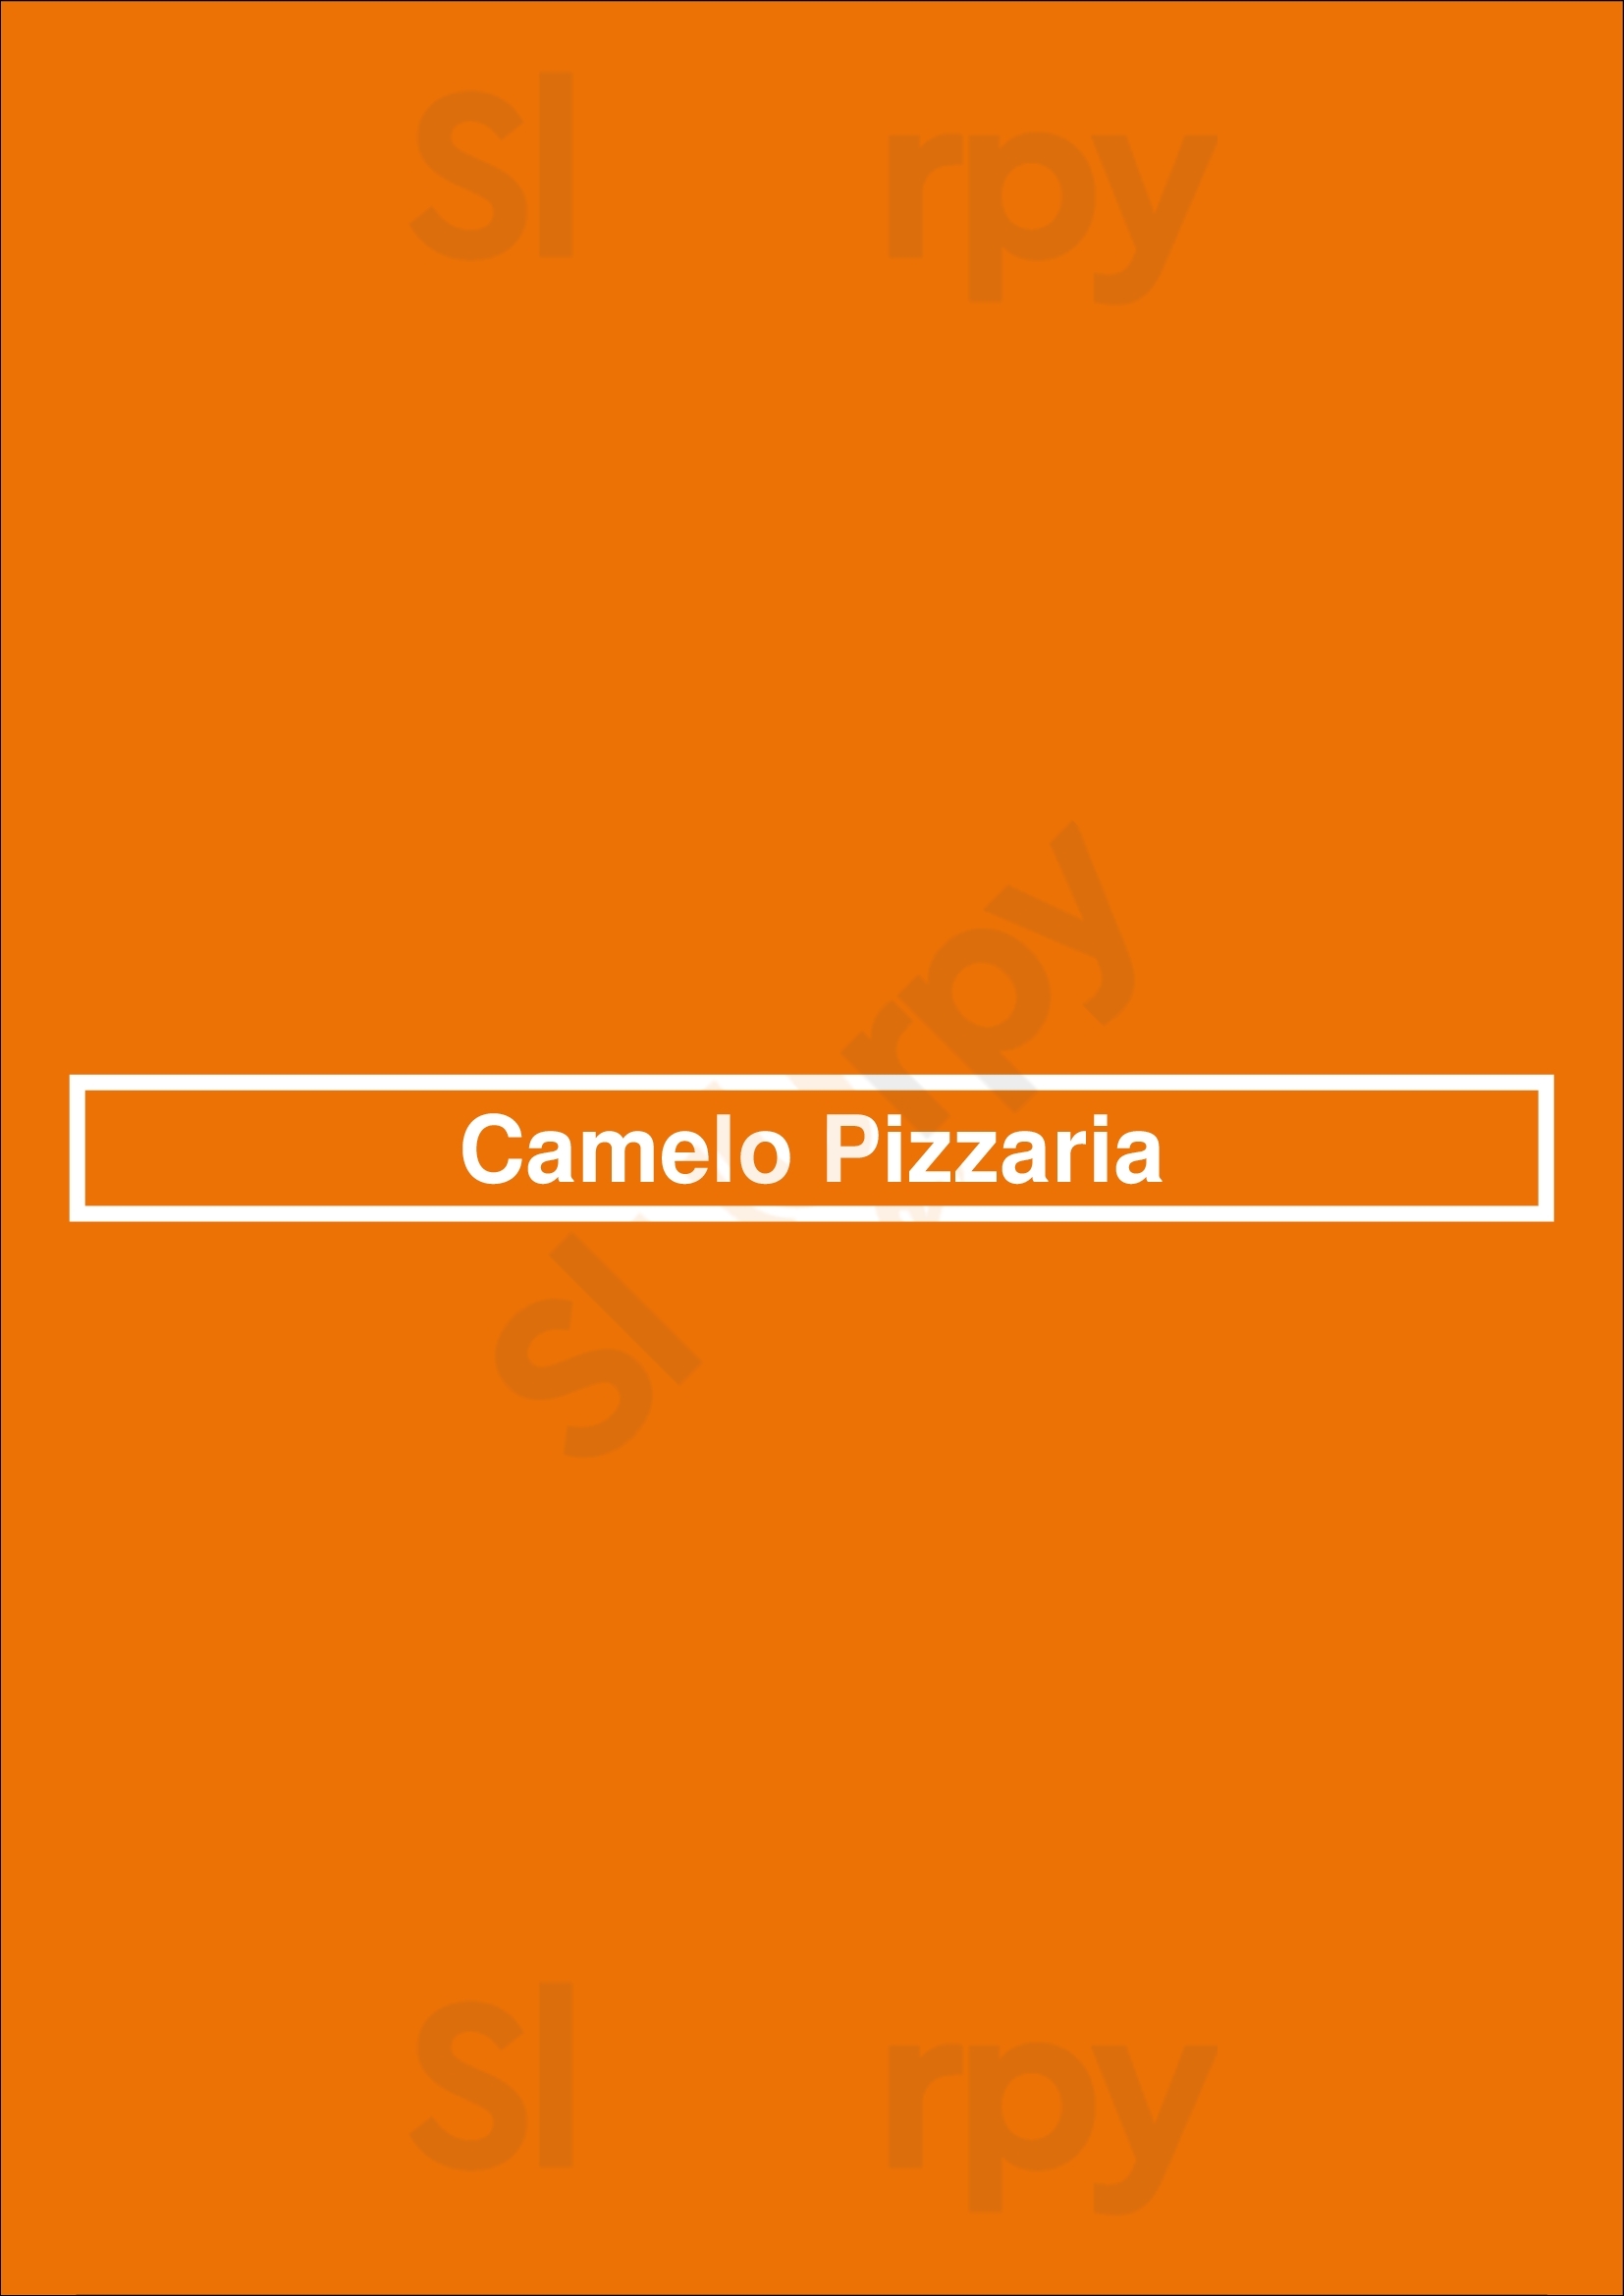 Camelo Pizzaria São Paulo Menu - 1